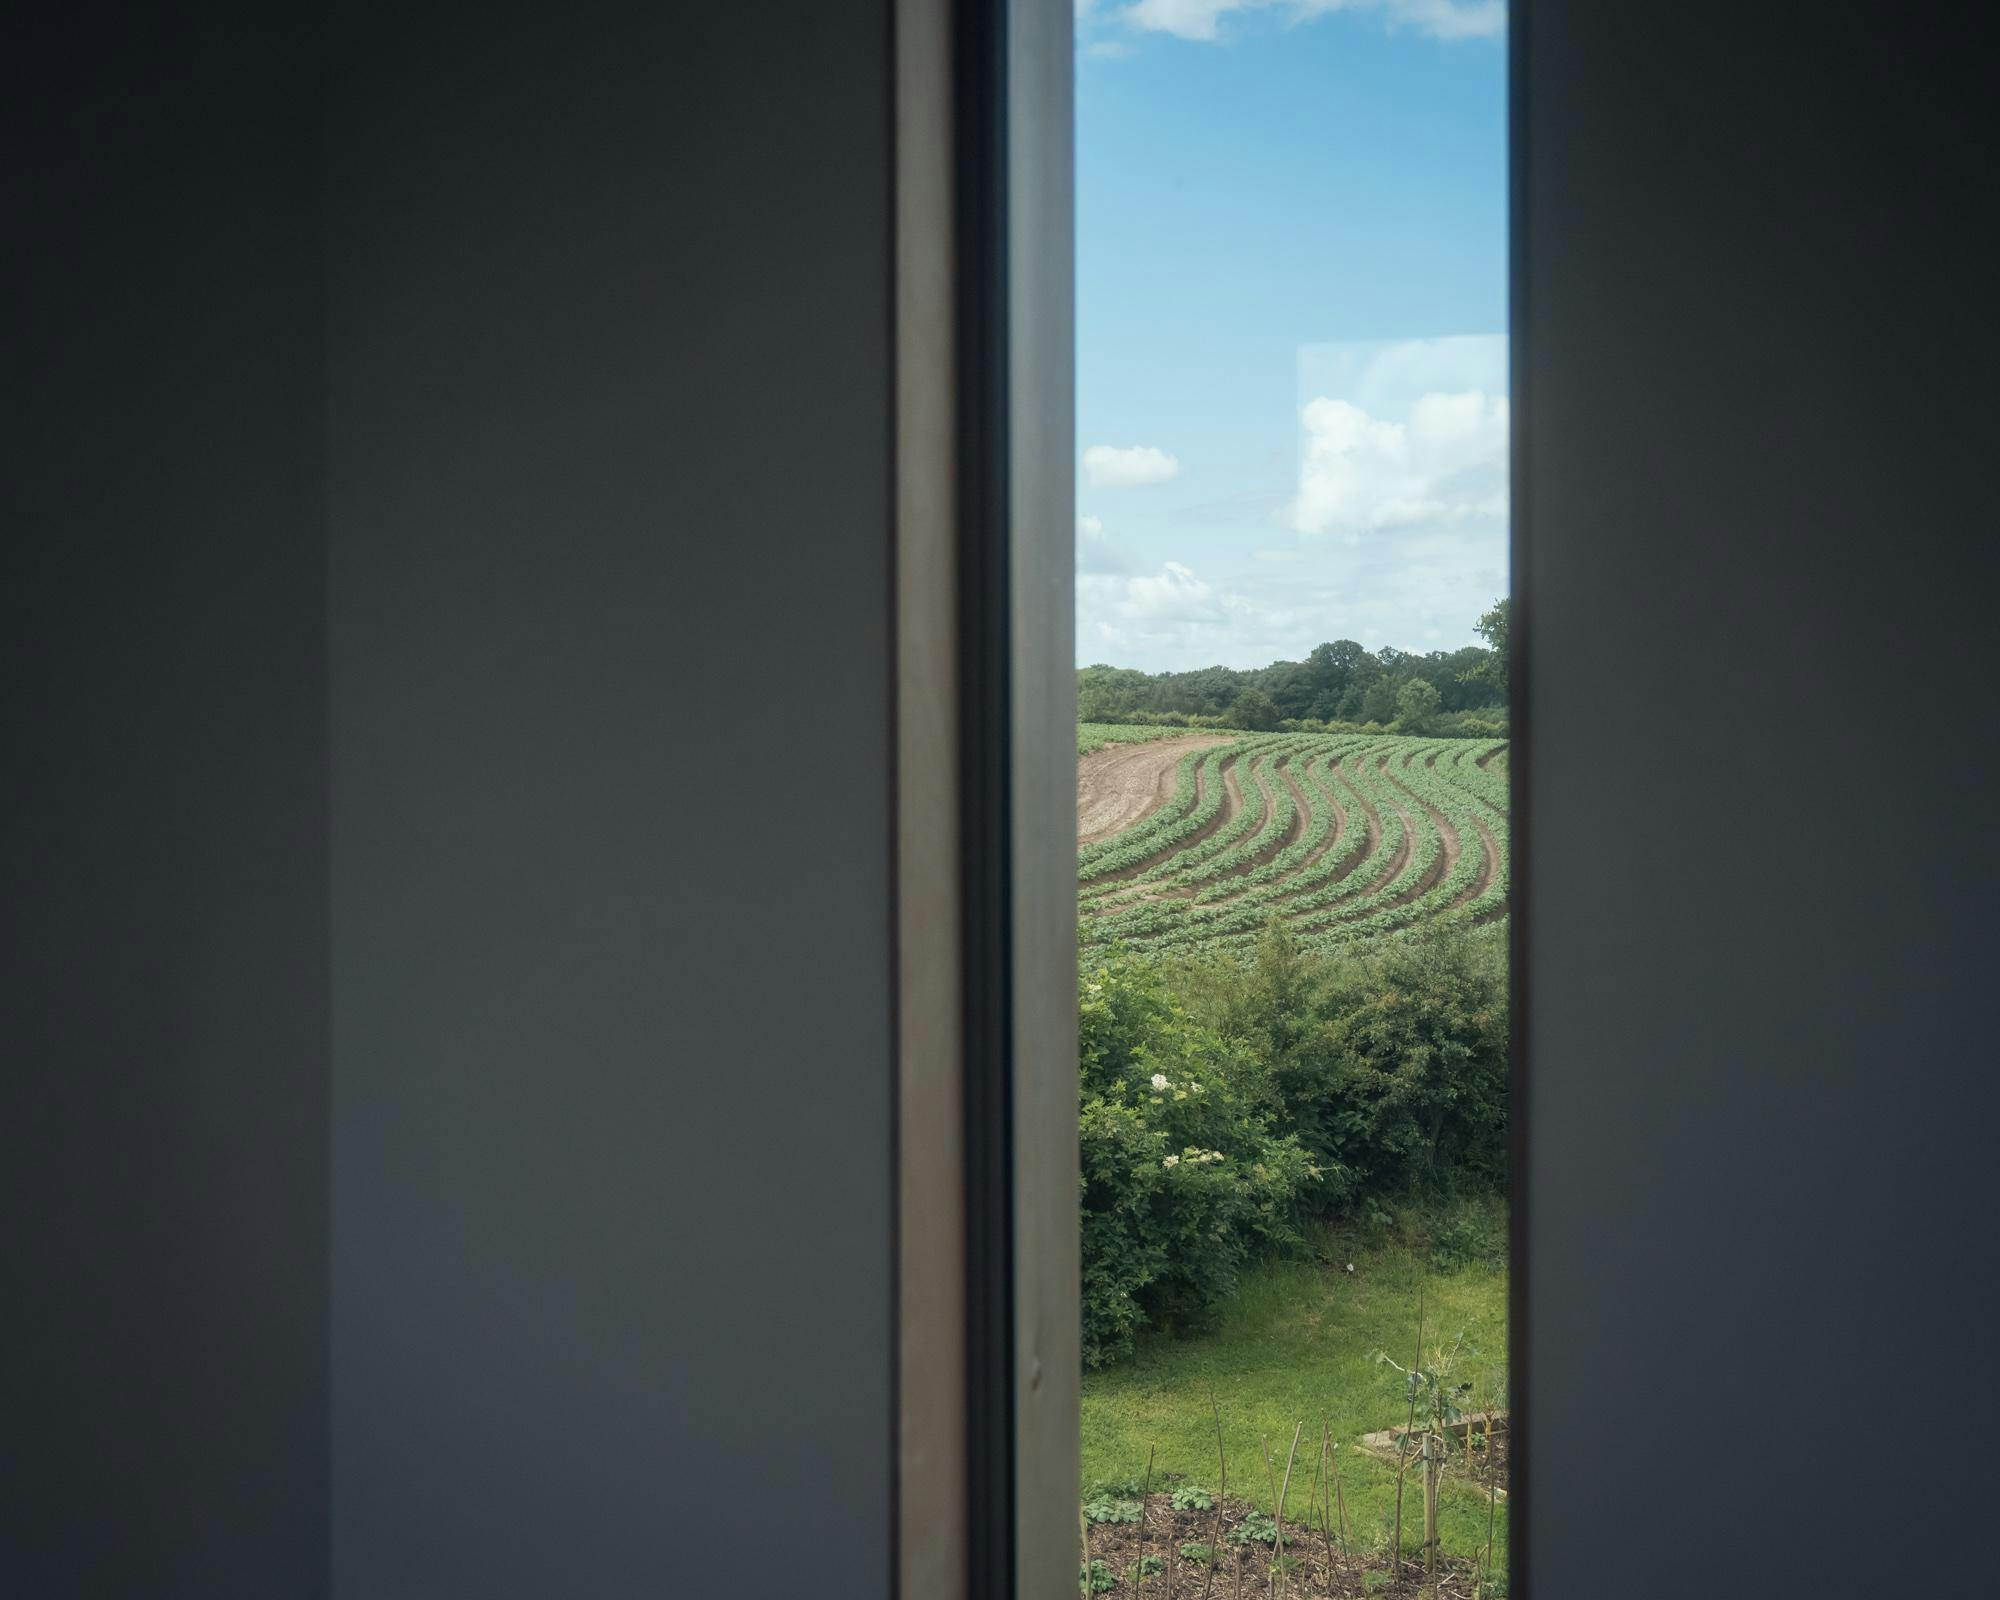 View to crop field through window